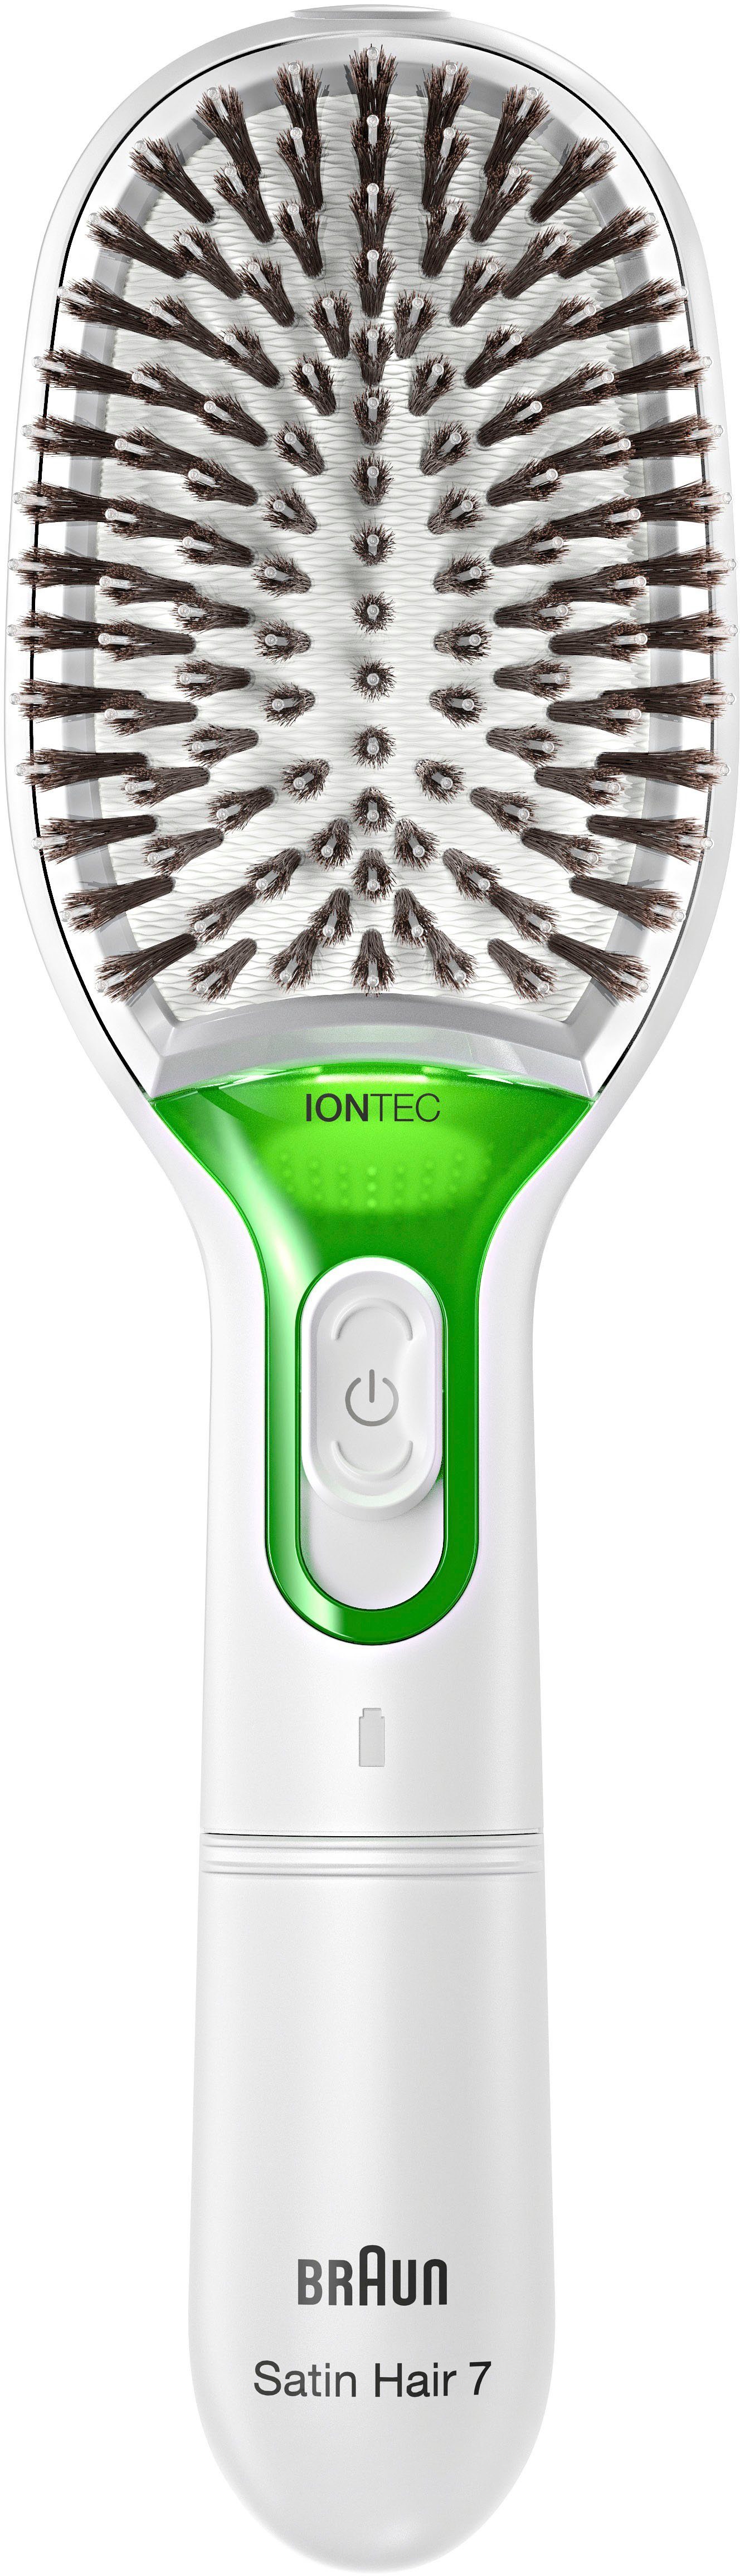 Braun Elektrohaarbürste 7 IONTEC Technologie Satin Naturborsten Bürste mit und Hair